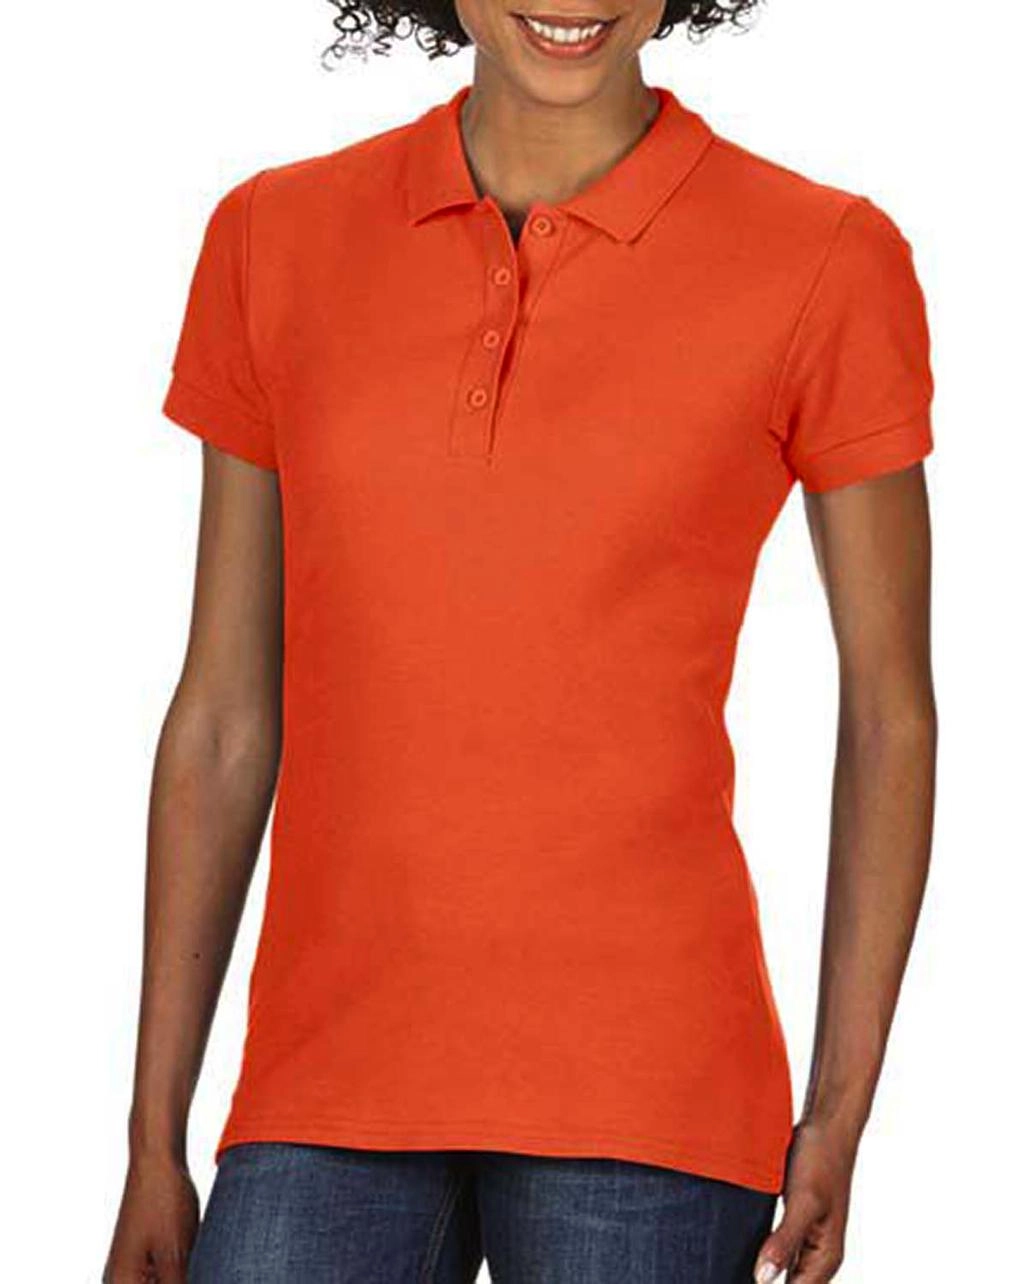 Softstyle® Ladies Double Pique Polo zum Besticken und Bedrucken in der Farbe Orange mit Ihren Logo, Schriftzug oder Motiv.